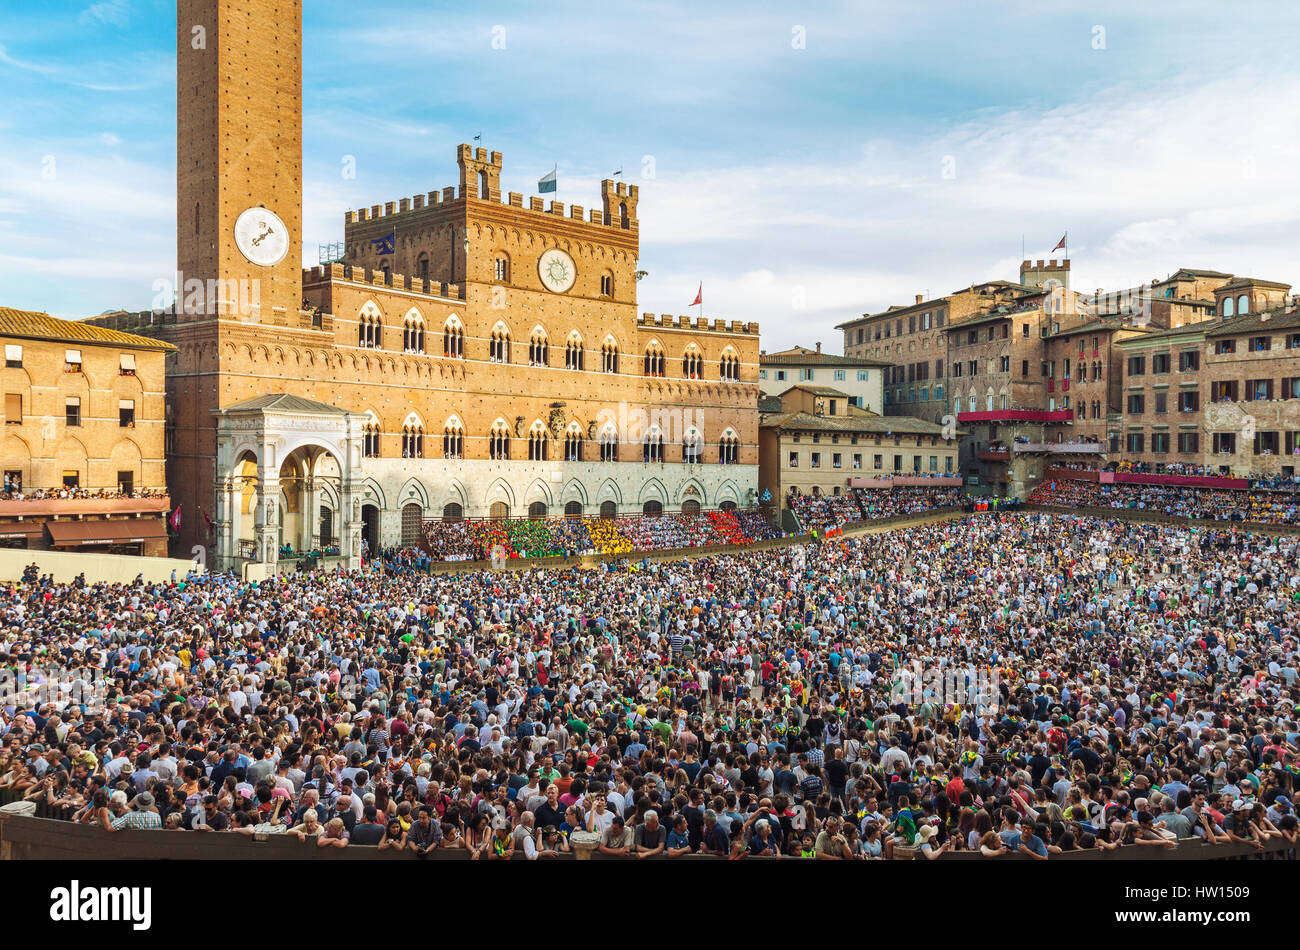 SIENA, Italia - 29 giugno 2016: folla di persone nella Piazza del Campo a Siena, Italia, guardando la tradizionale Palio di Siena corsa di cavalli. Foto Stock